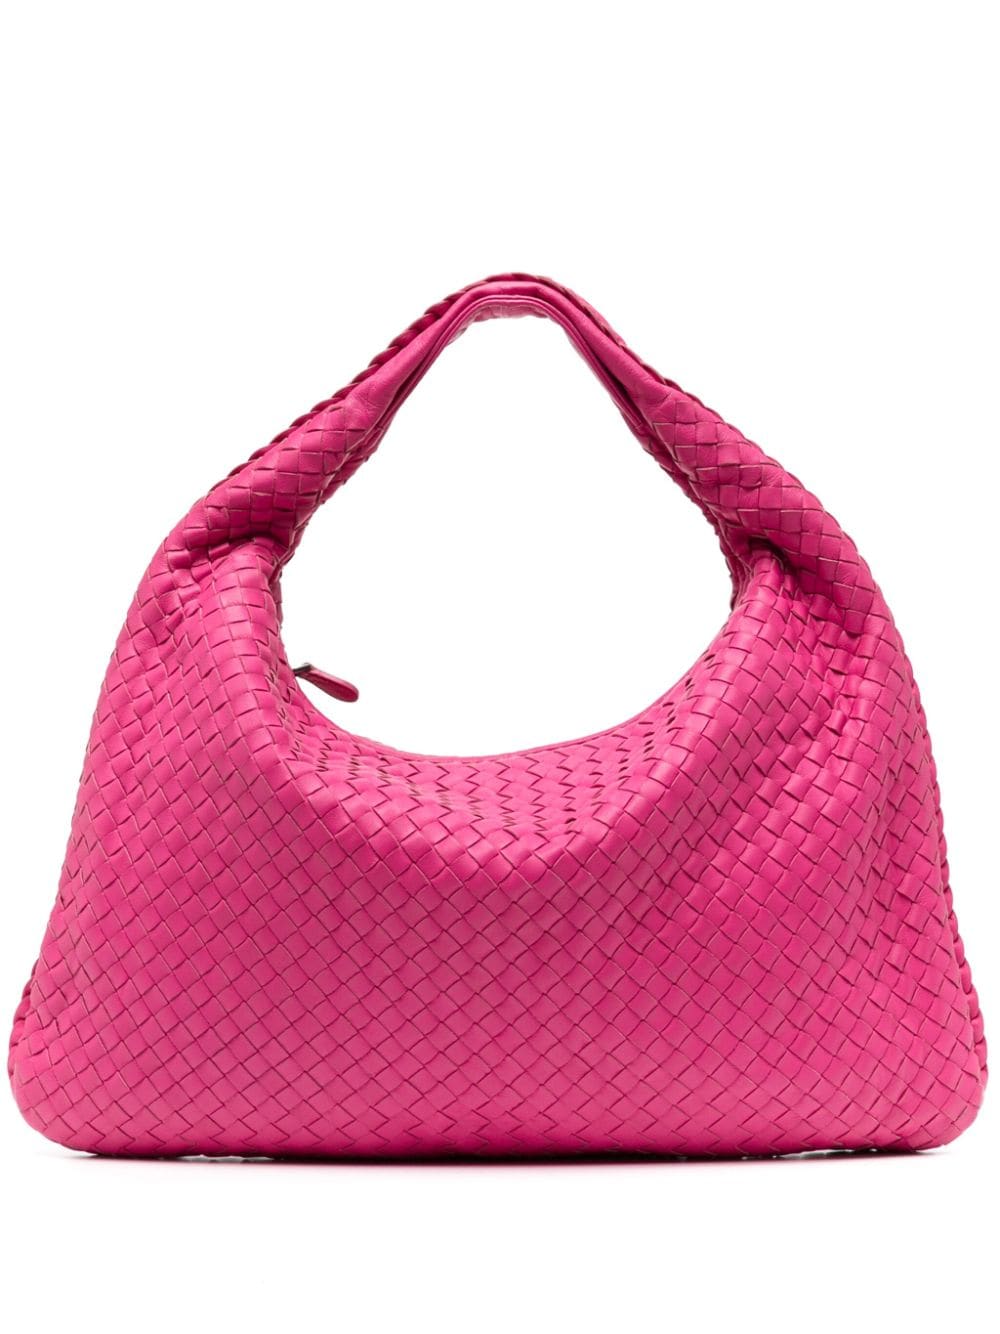 Pre-owned Bottega Veneta Intrecciato Zipped Handbag In Pink